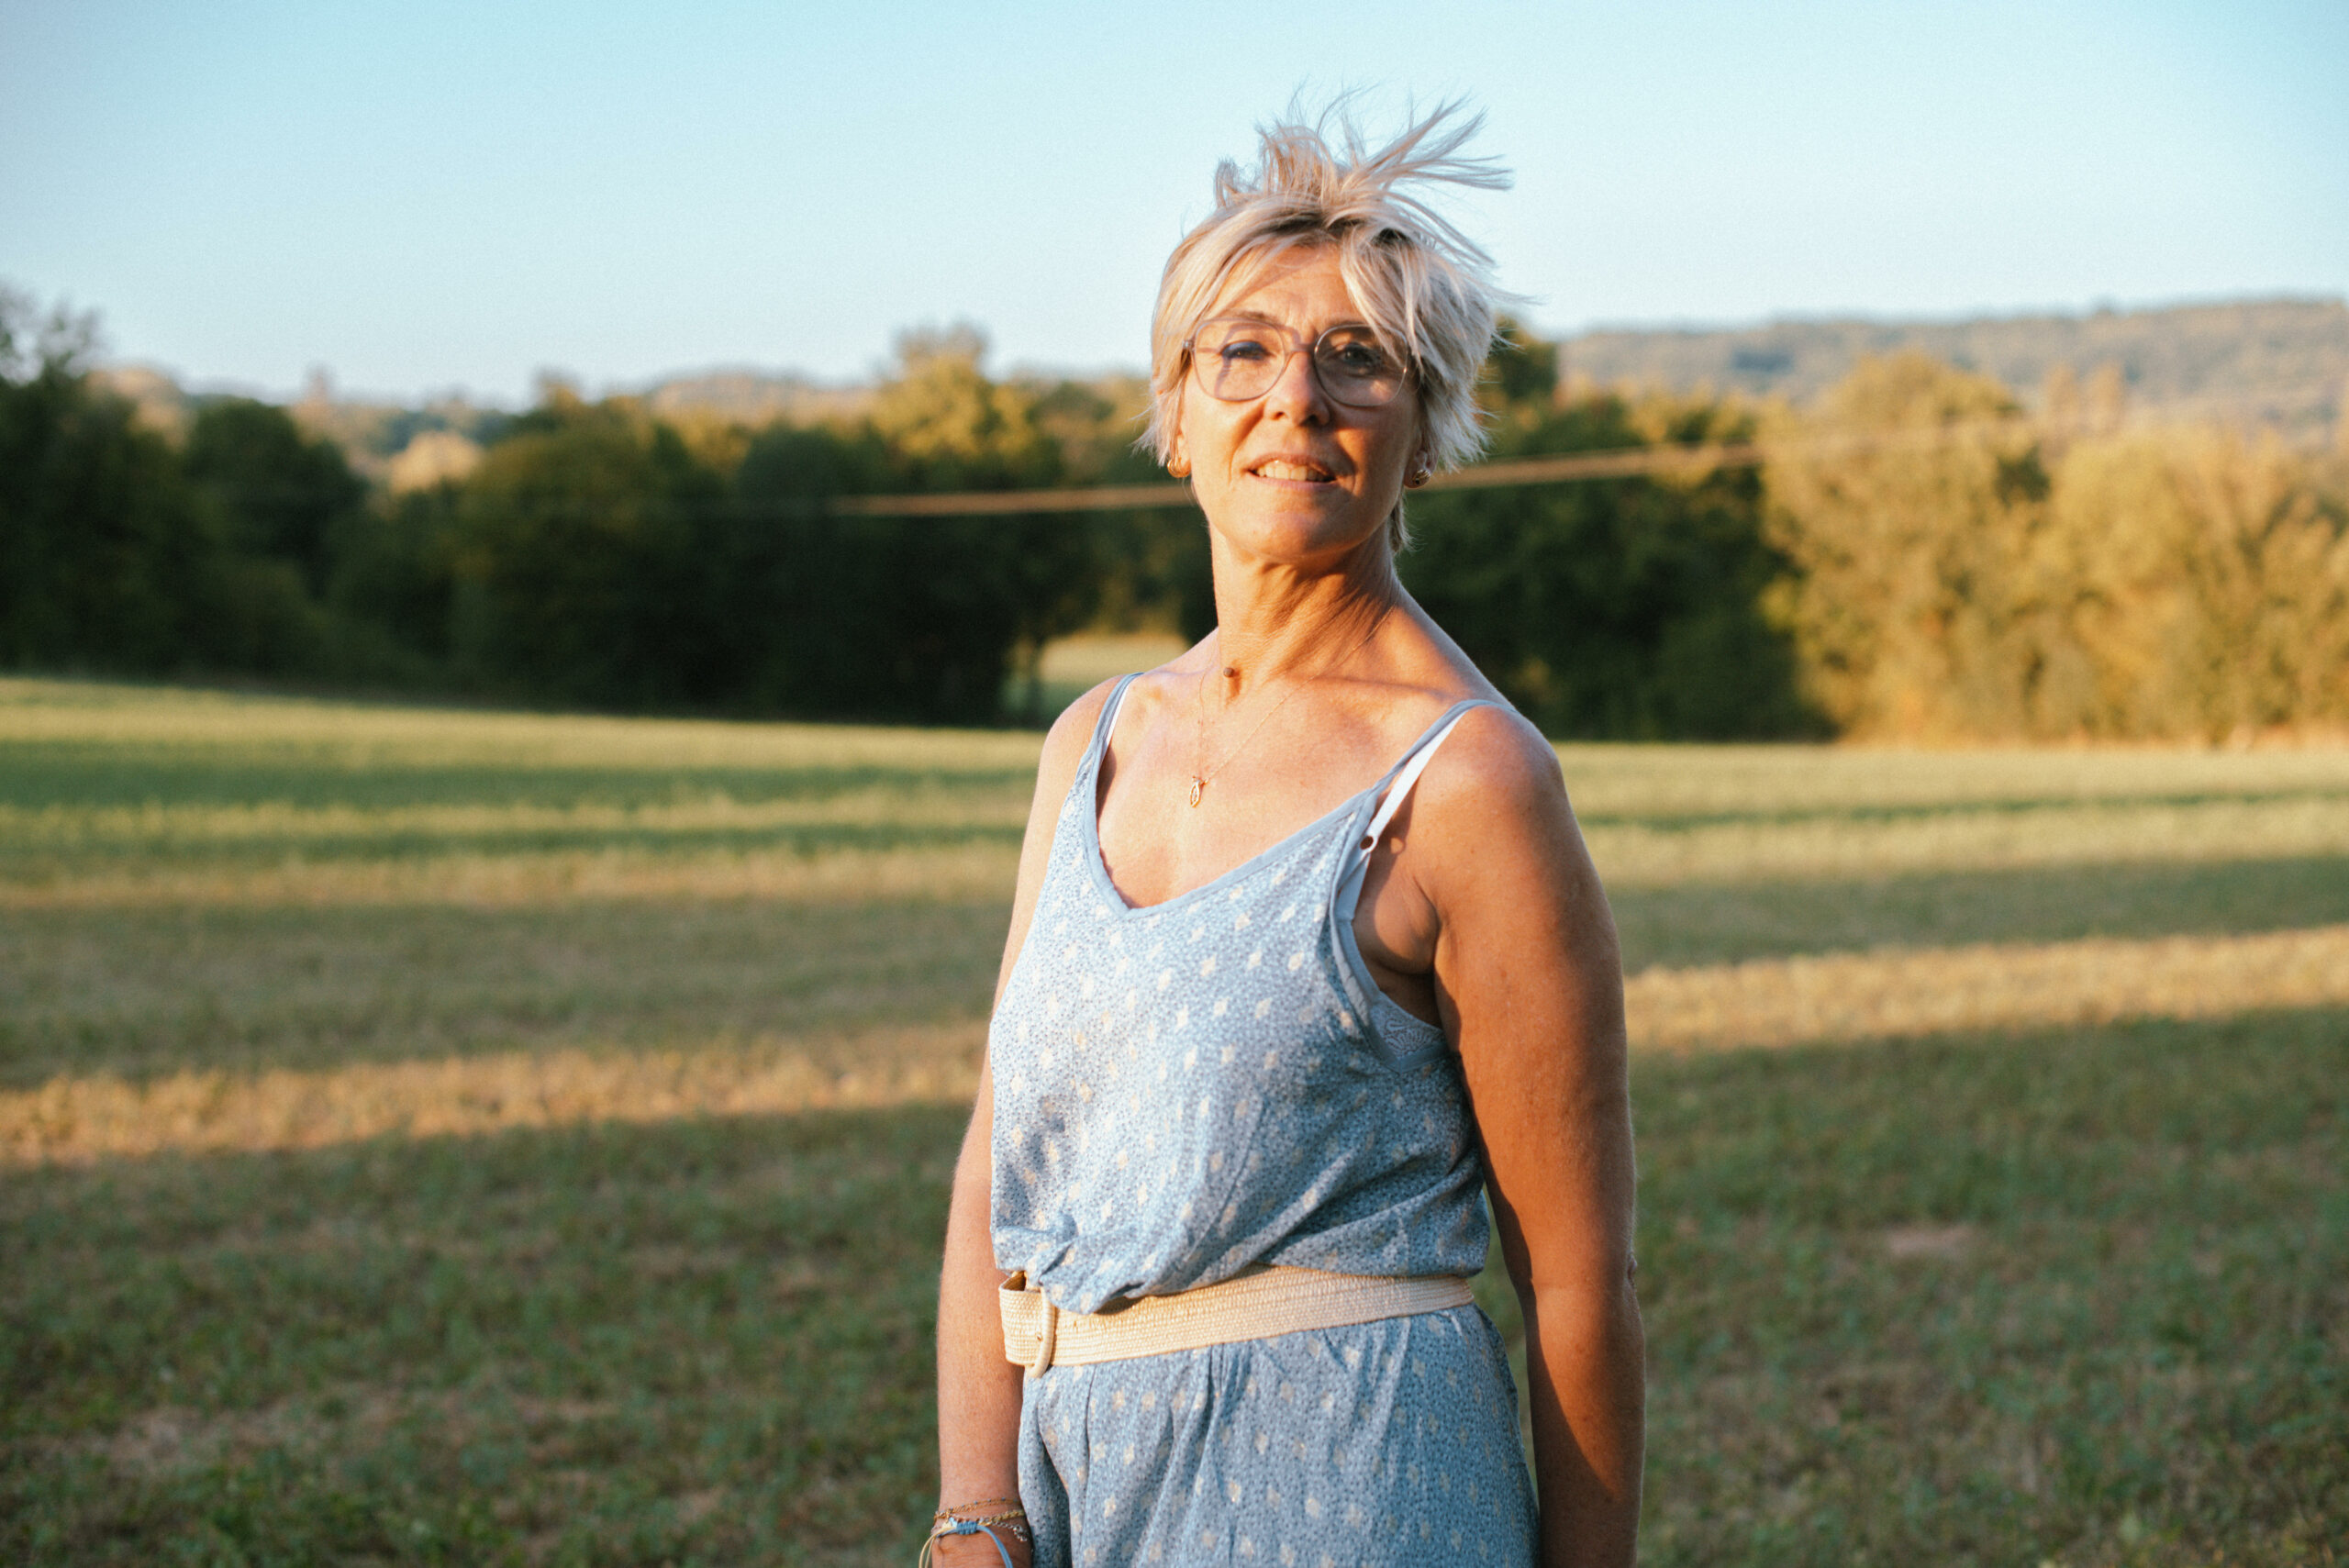 Photographe Isère Rhône Alpes portrait de femme Anne-Claire Sorne